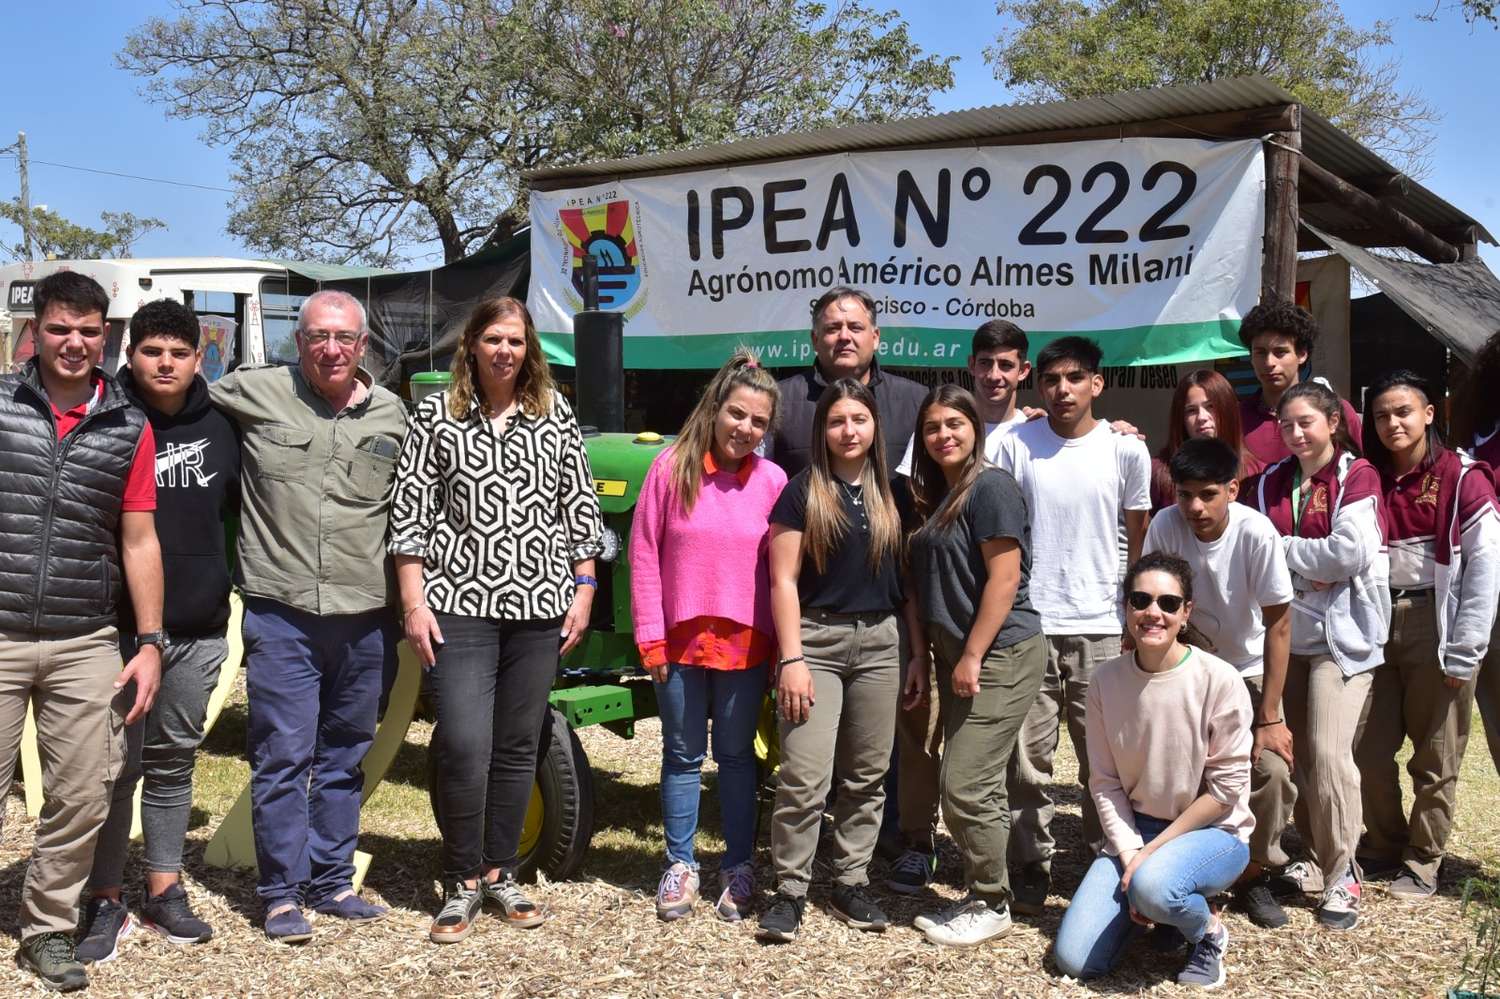 Un tractor recuperado por los alumnos, la atracción en el stand del Ipea 222